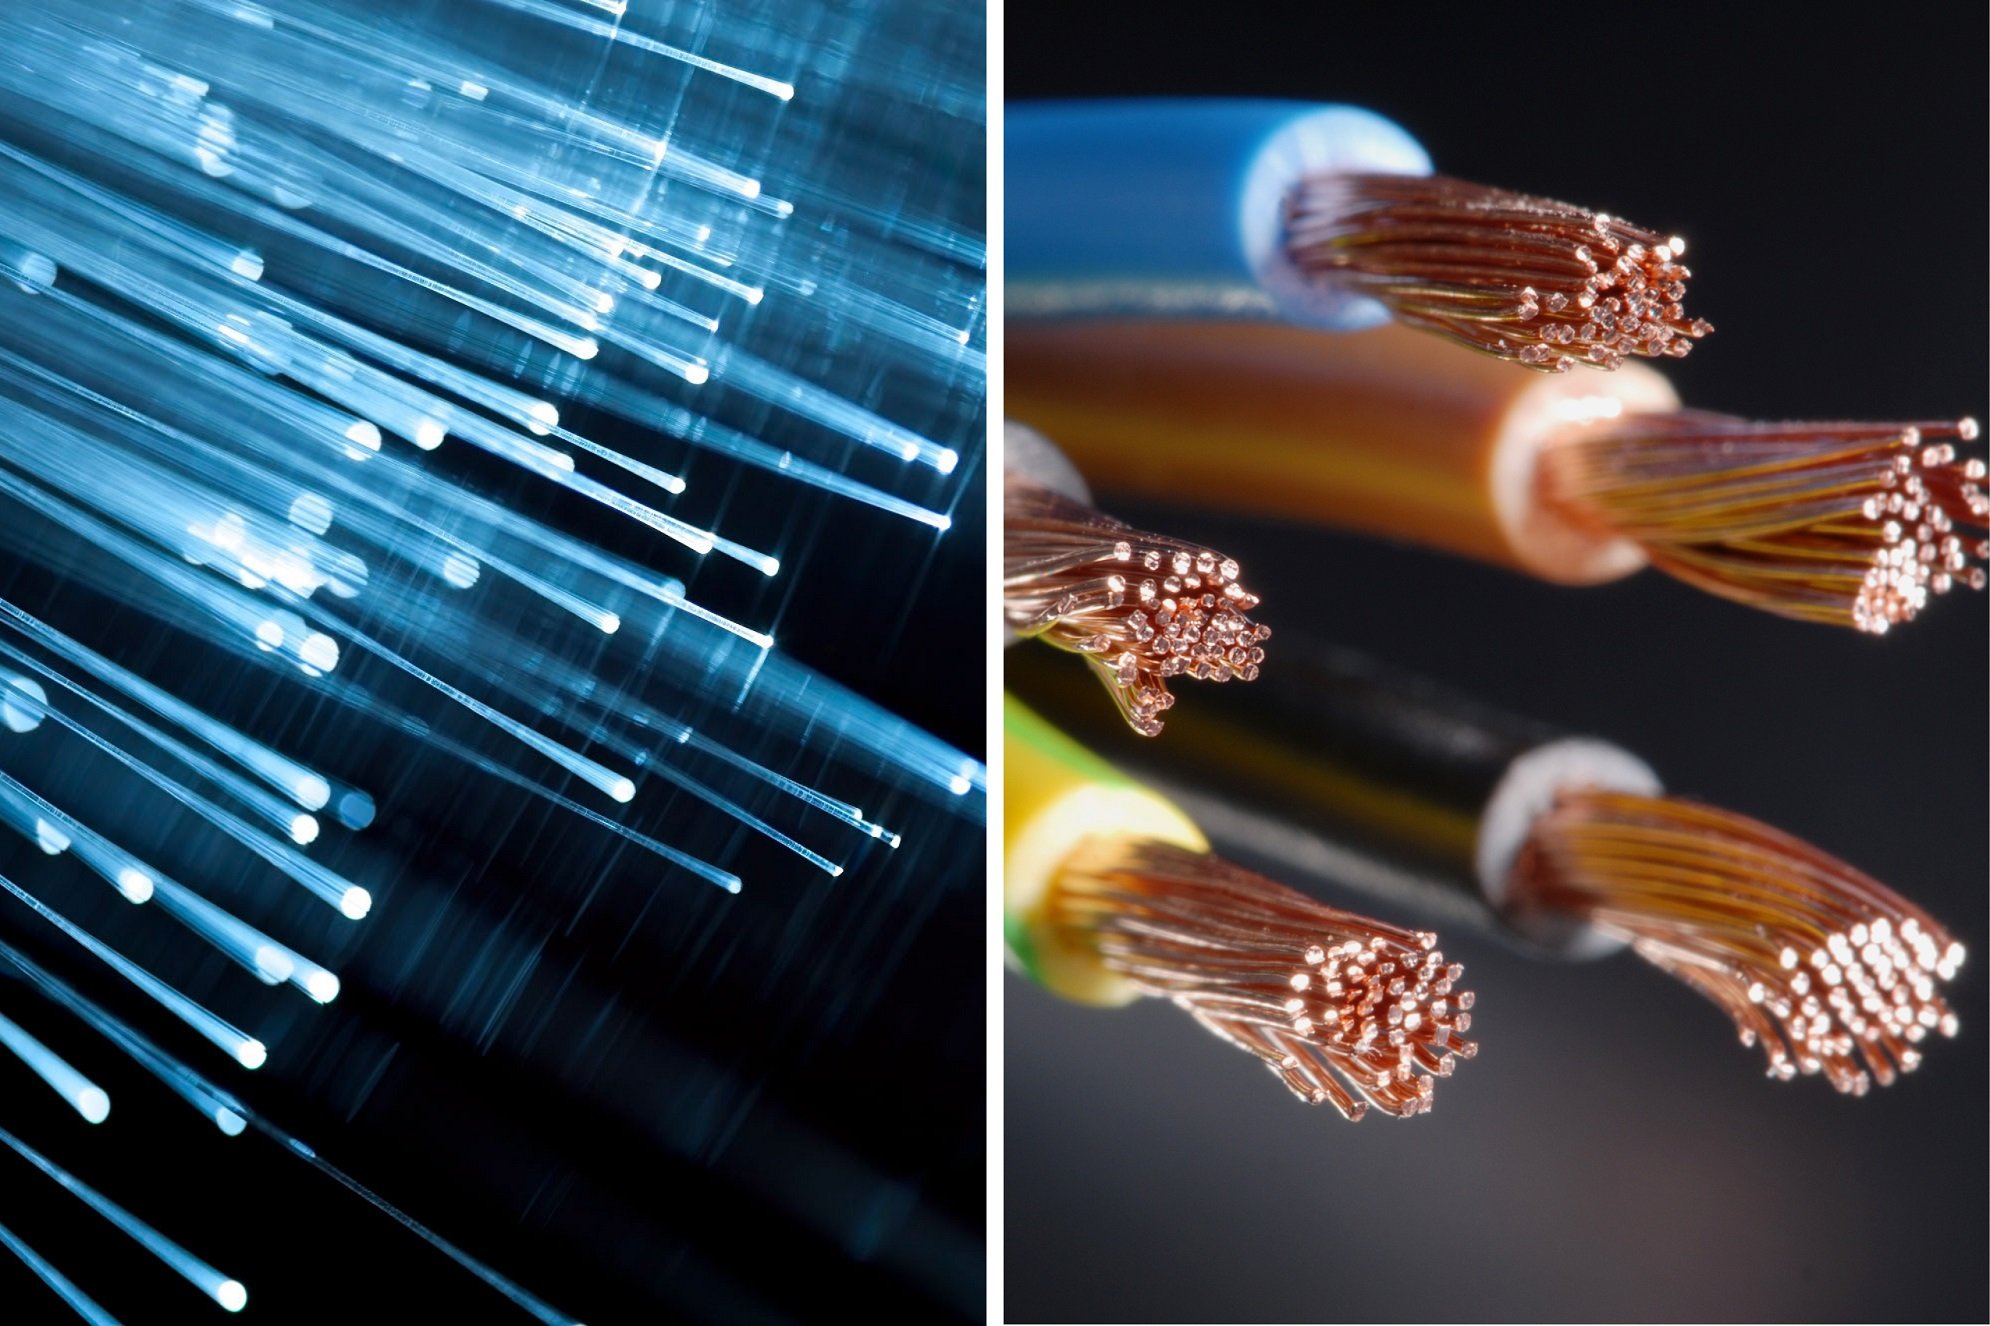 fibre cable vs copper cable.jpg